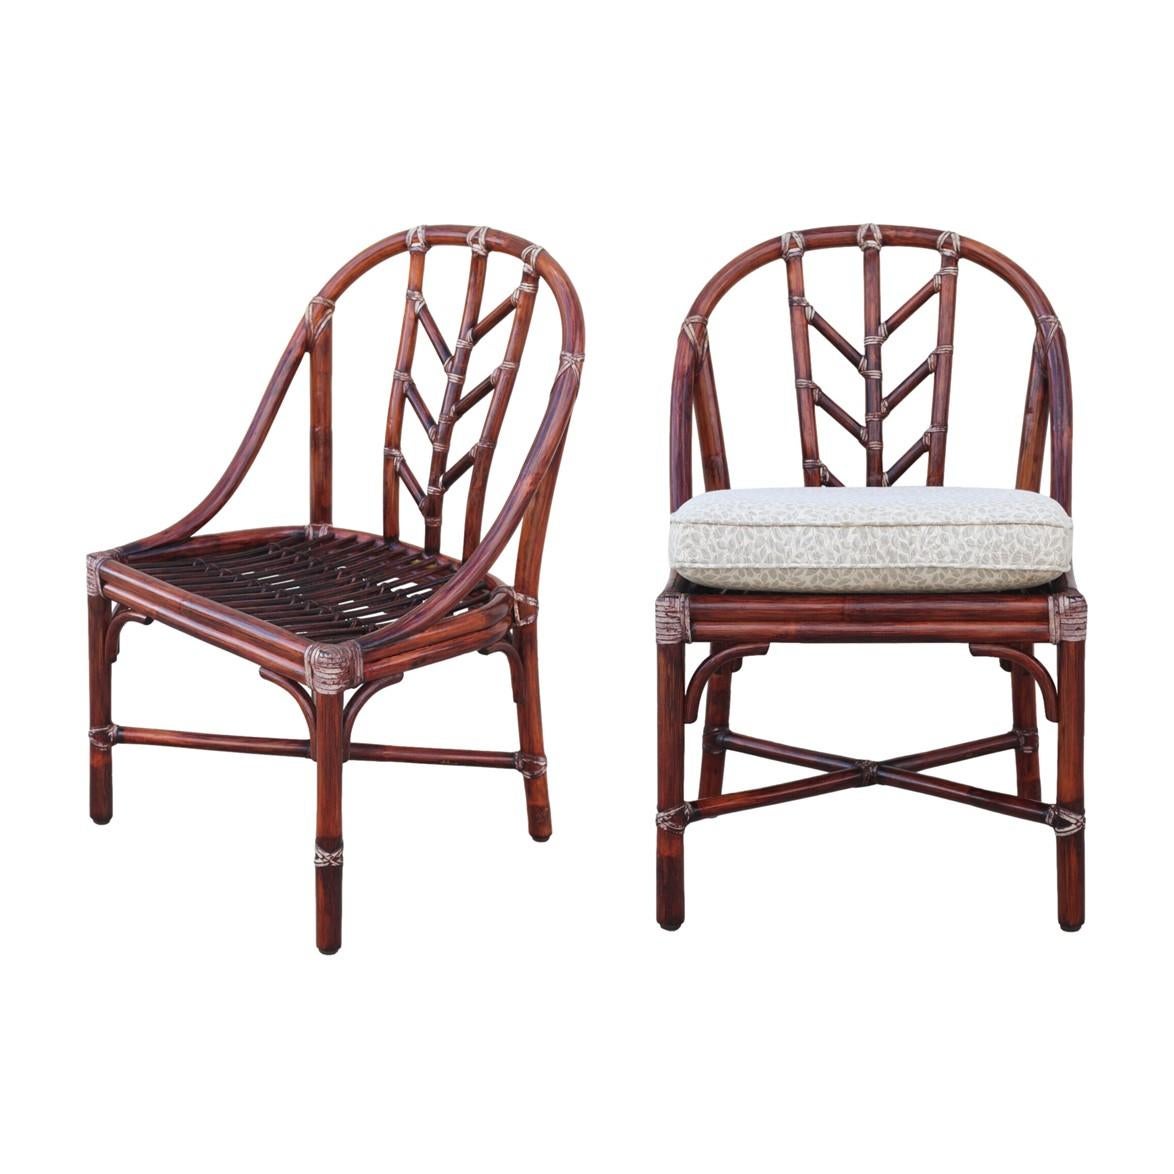 Ein schönes Paar M-74 Esszimmerstühle, entworfen von Elinor McGuire für McGuire San Francisco. Die Stühle sind originalgetreu lackiert und verfügen über die für McGuire typischen geflochtenen Rohlederbindungen mit gealterter Patina, ein Stockdeck